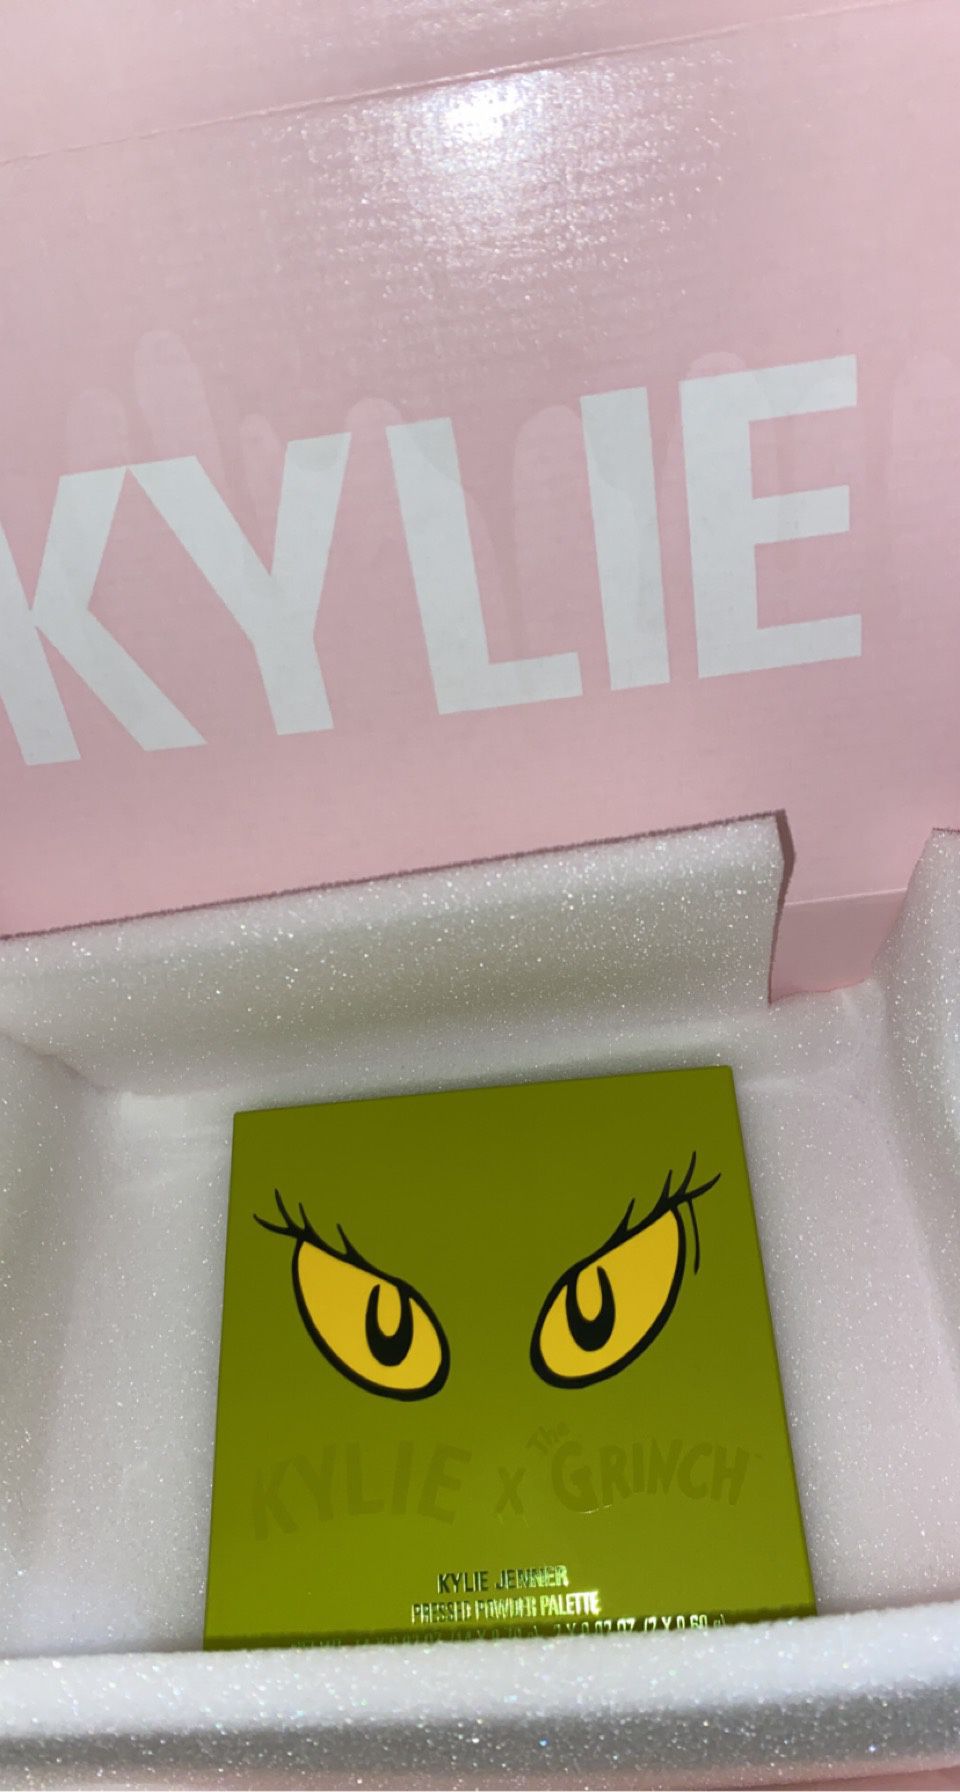 Kylie X The Grinch pressed powder palette